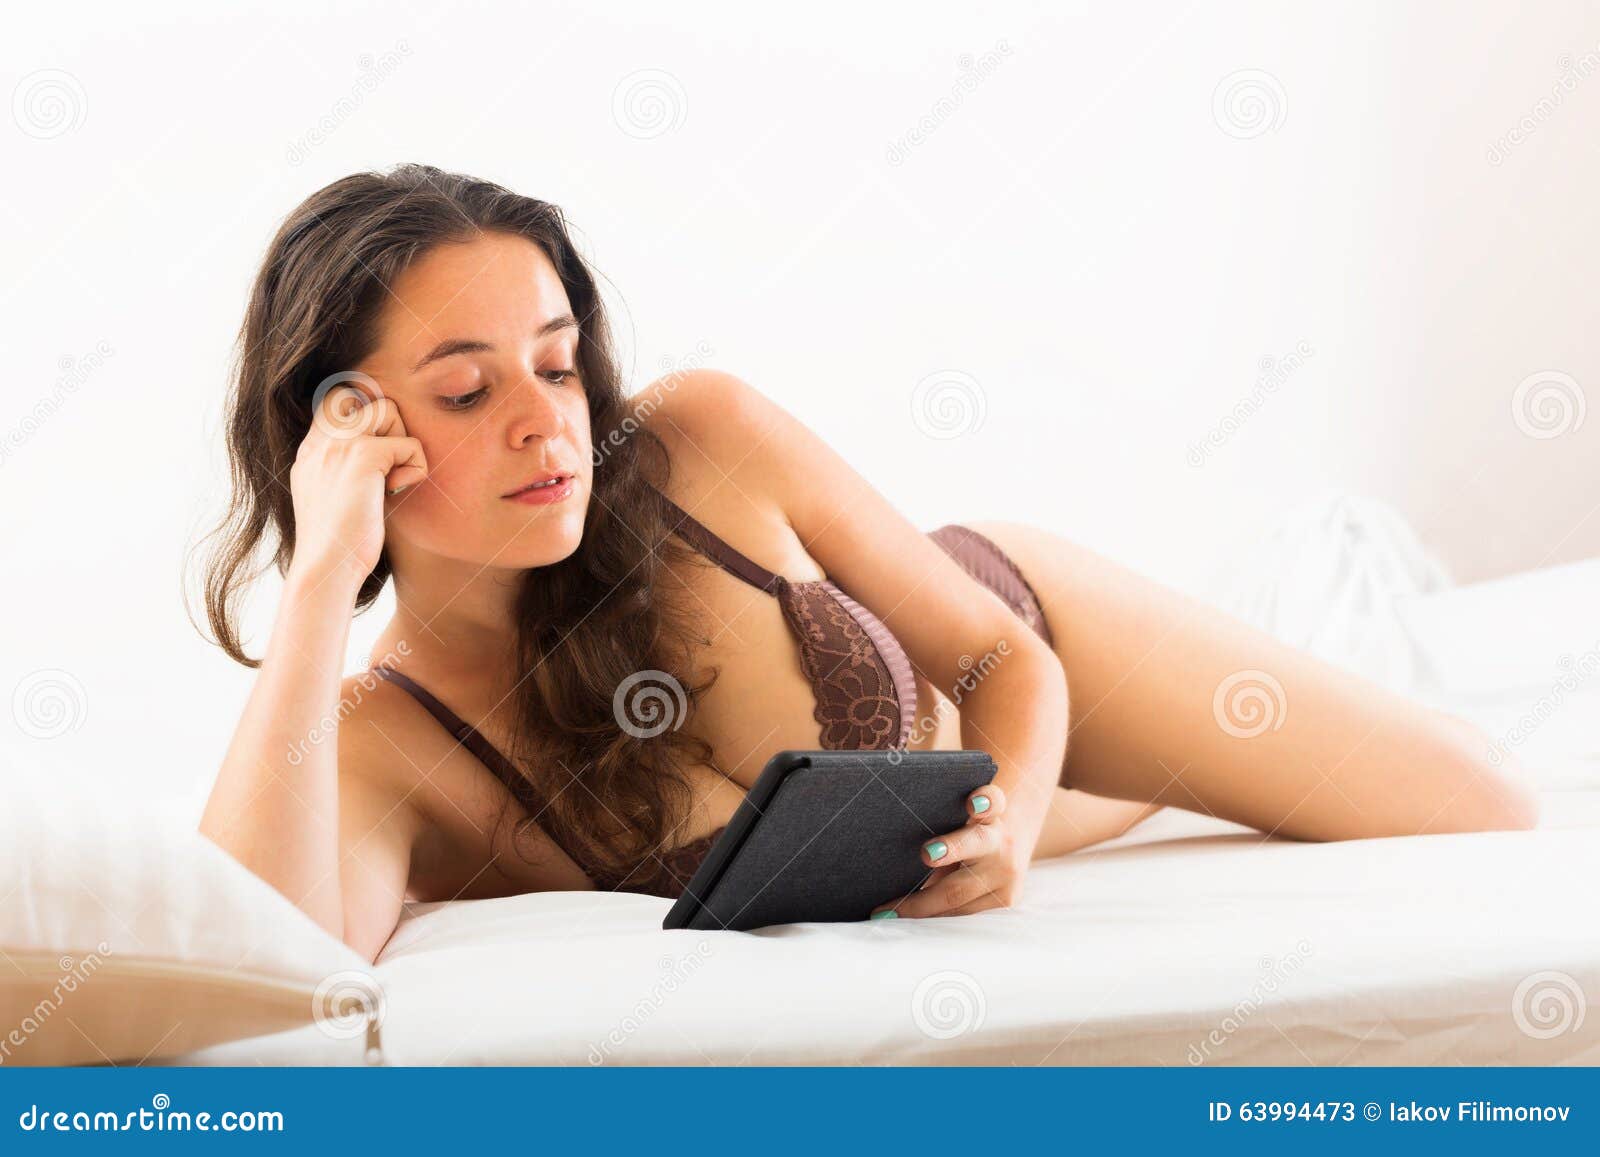 Удовольствие женщины в постели. Грация в постели женщина. Удивленная дамочка в постели. Женщина в кровати показывает презерватив. Женщина в кровати звонит картинки.